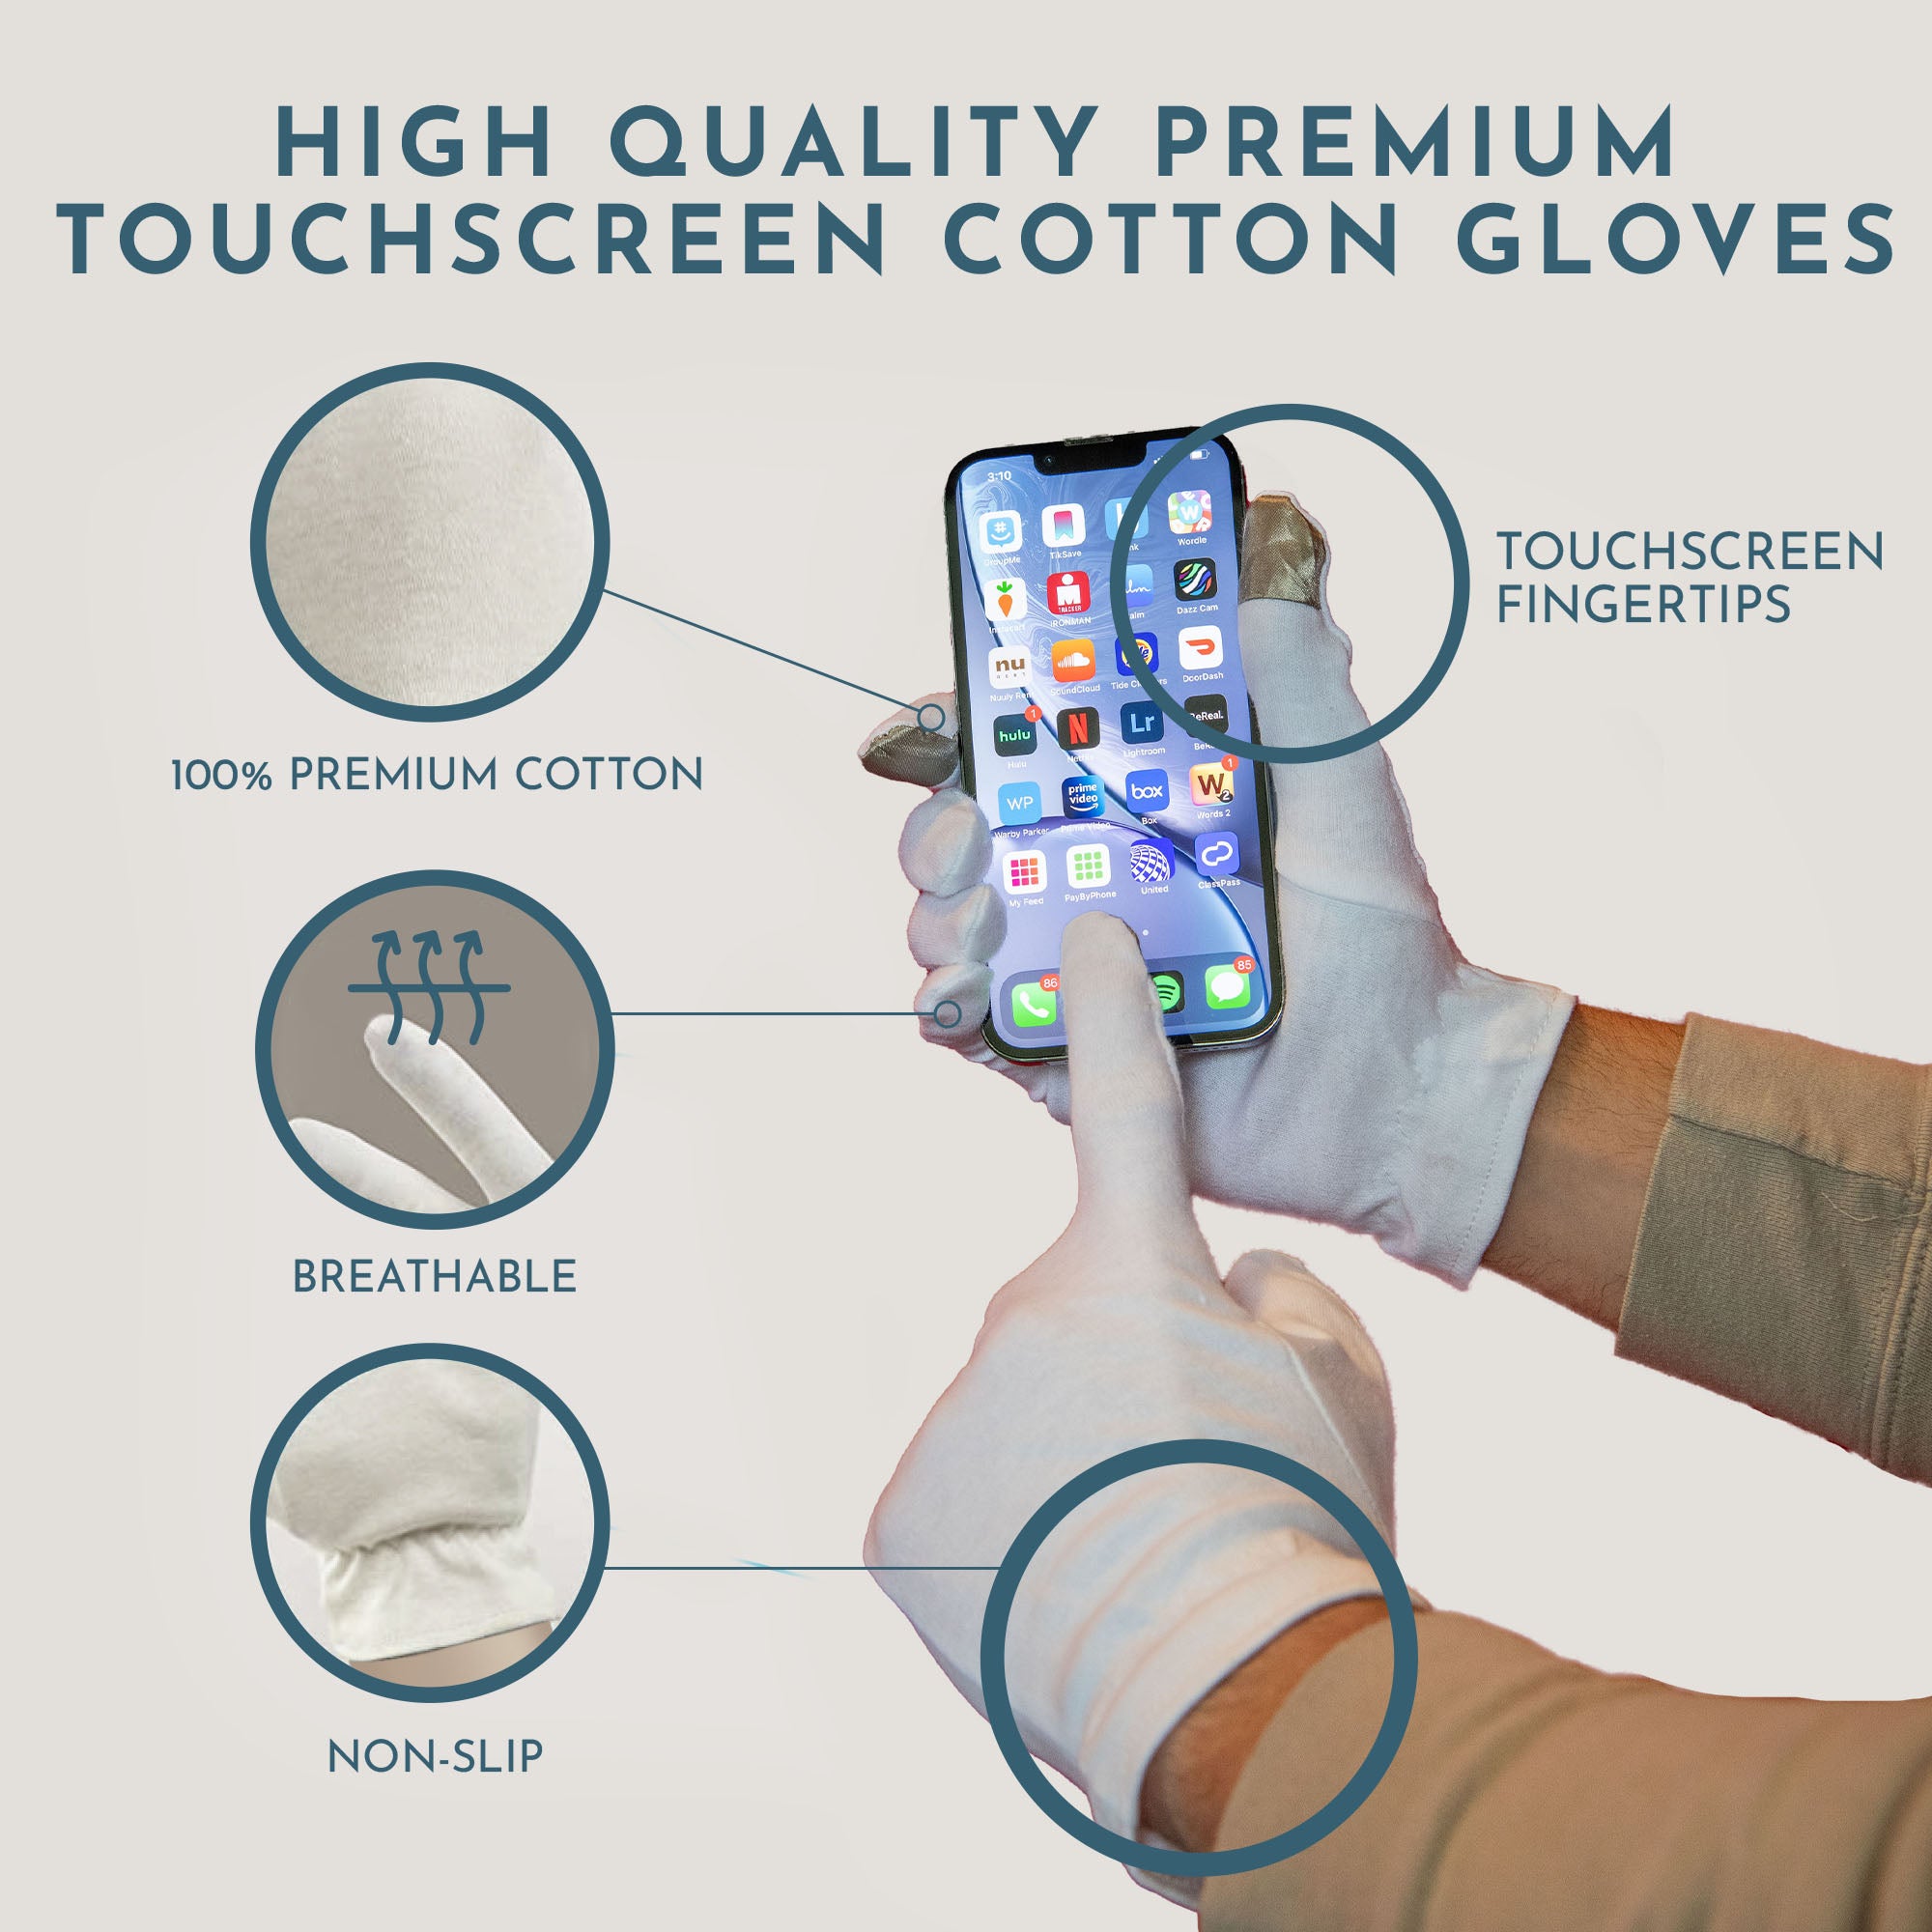 Cotton Moisturizing Gloves - Medium Touchscreen